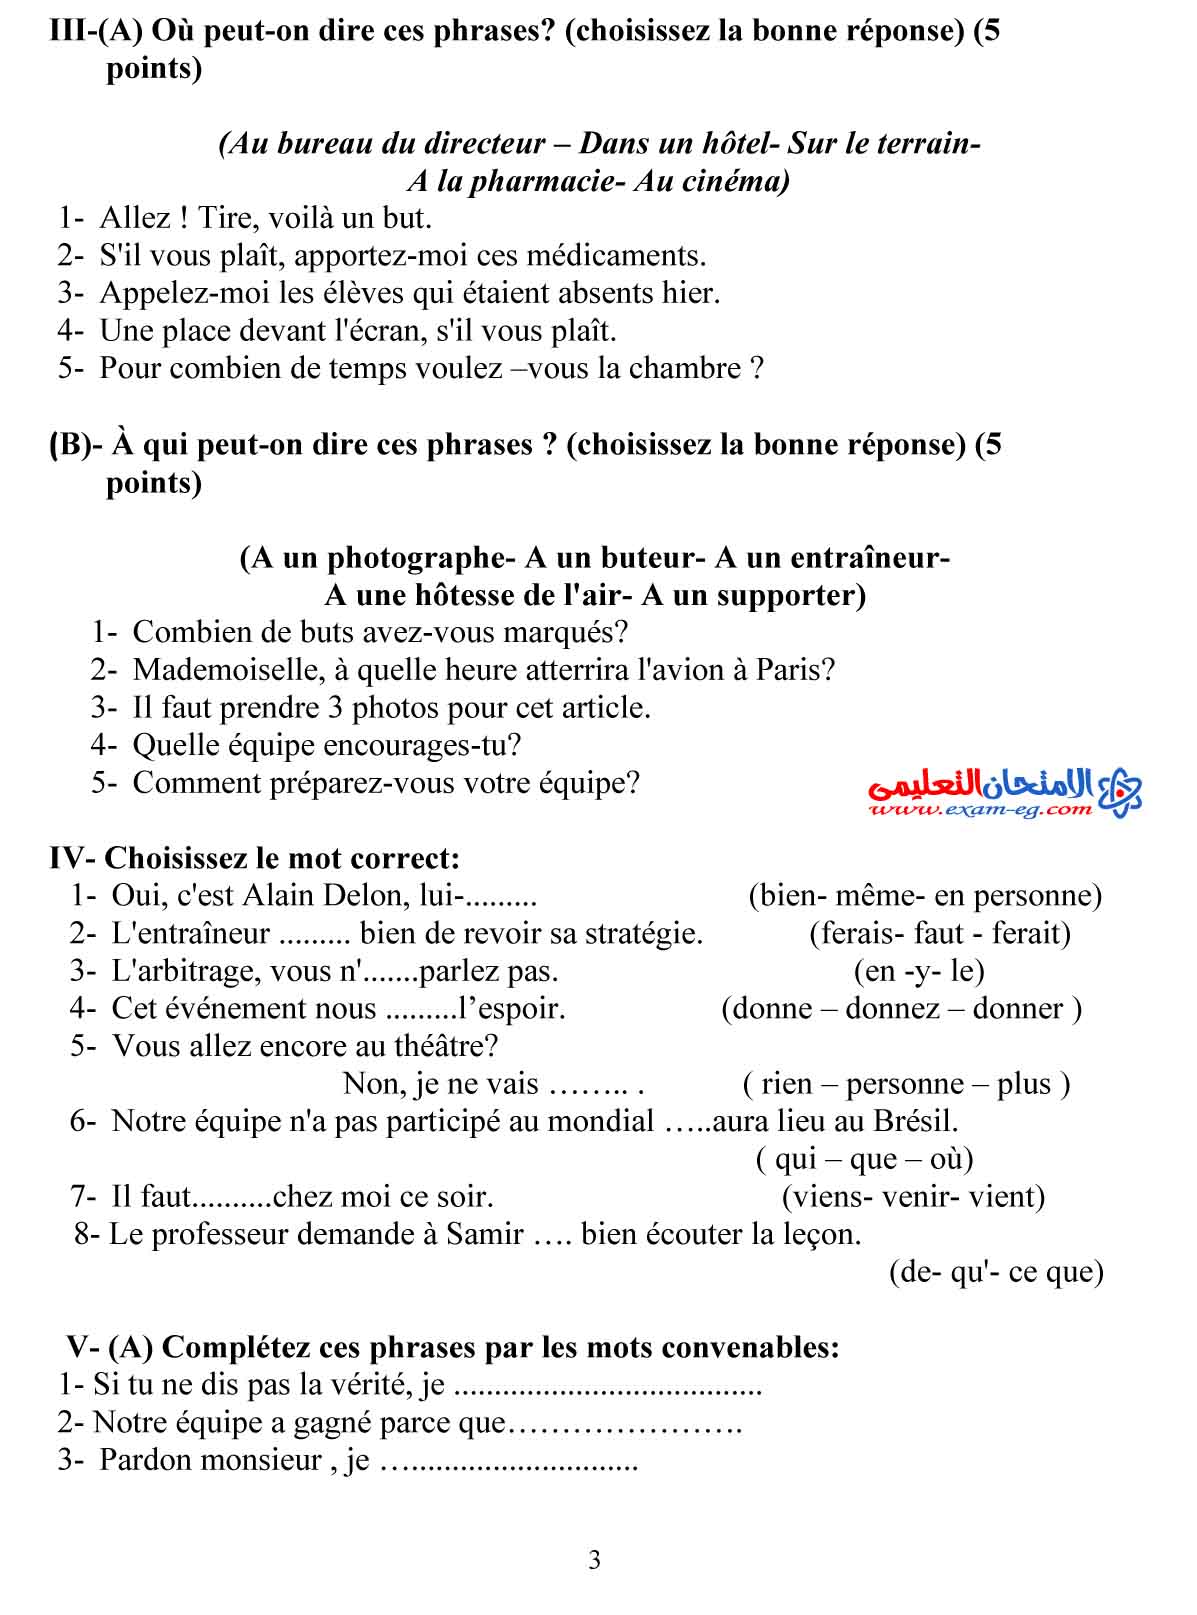 لغة فرنسية 2 - مدرسة اون لاين-3